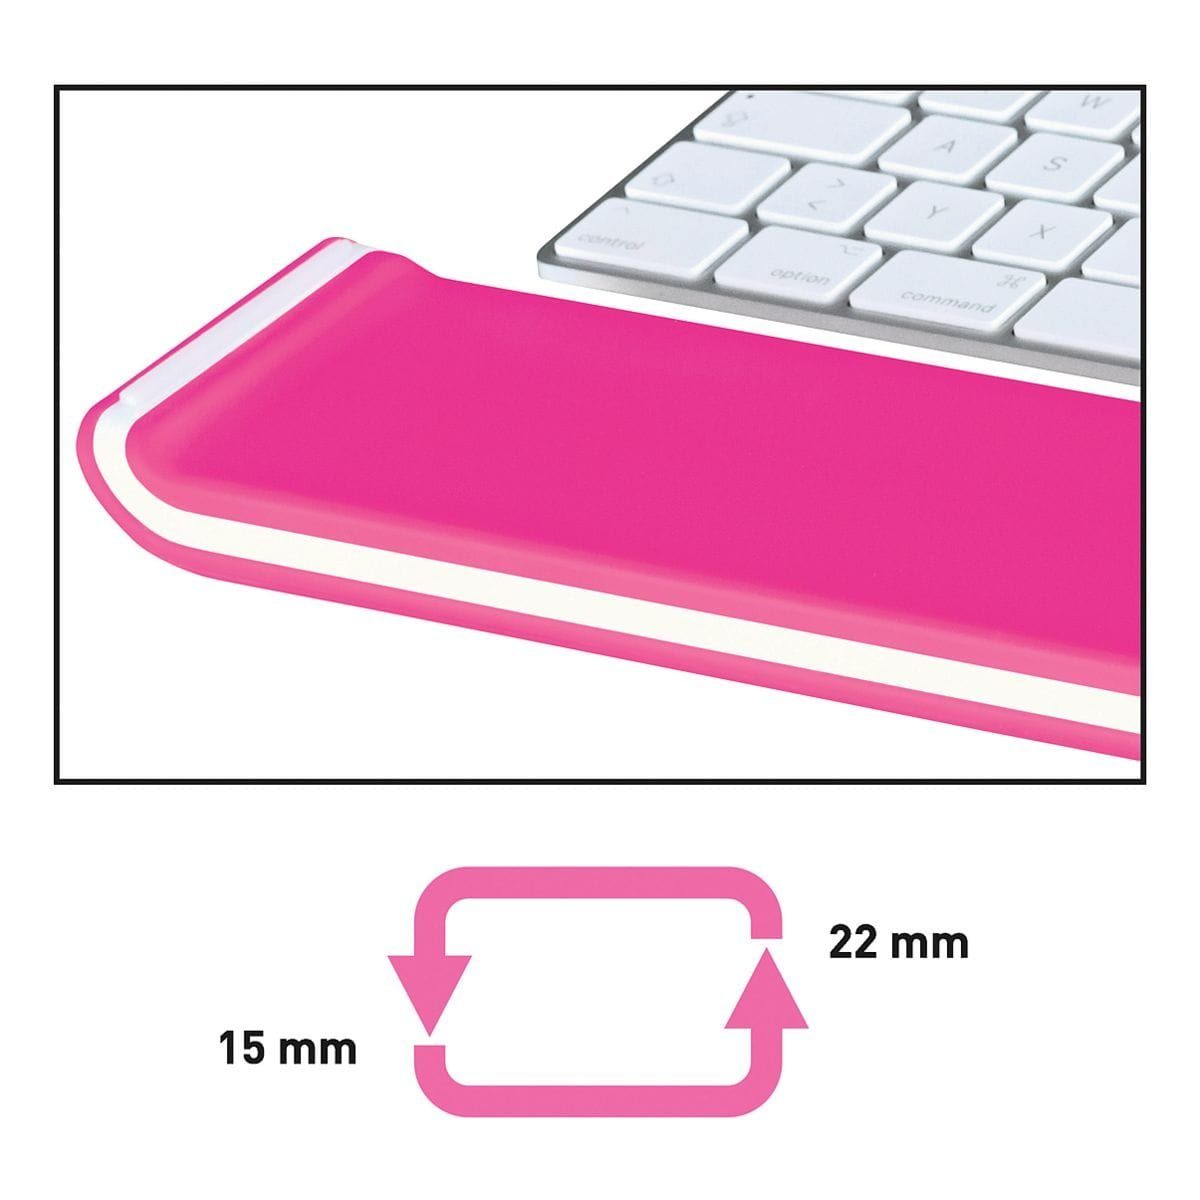 Schaumstofffüllung Ergo LEITZ mit Tastatur-Handballenauflage pink WOW,